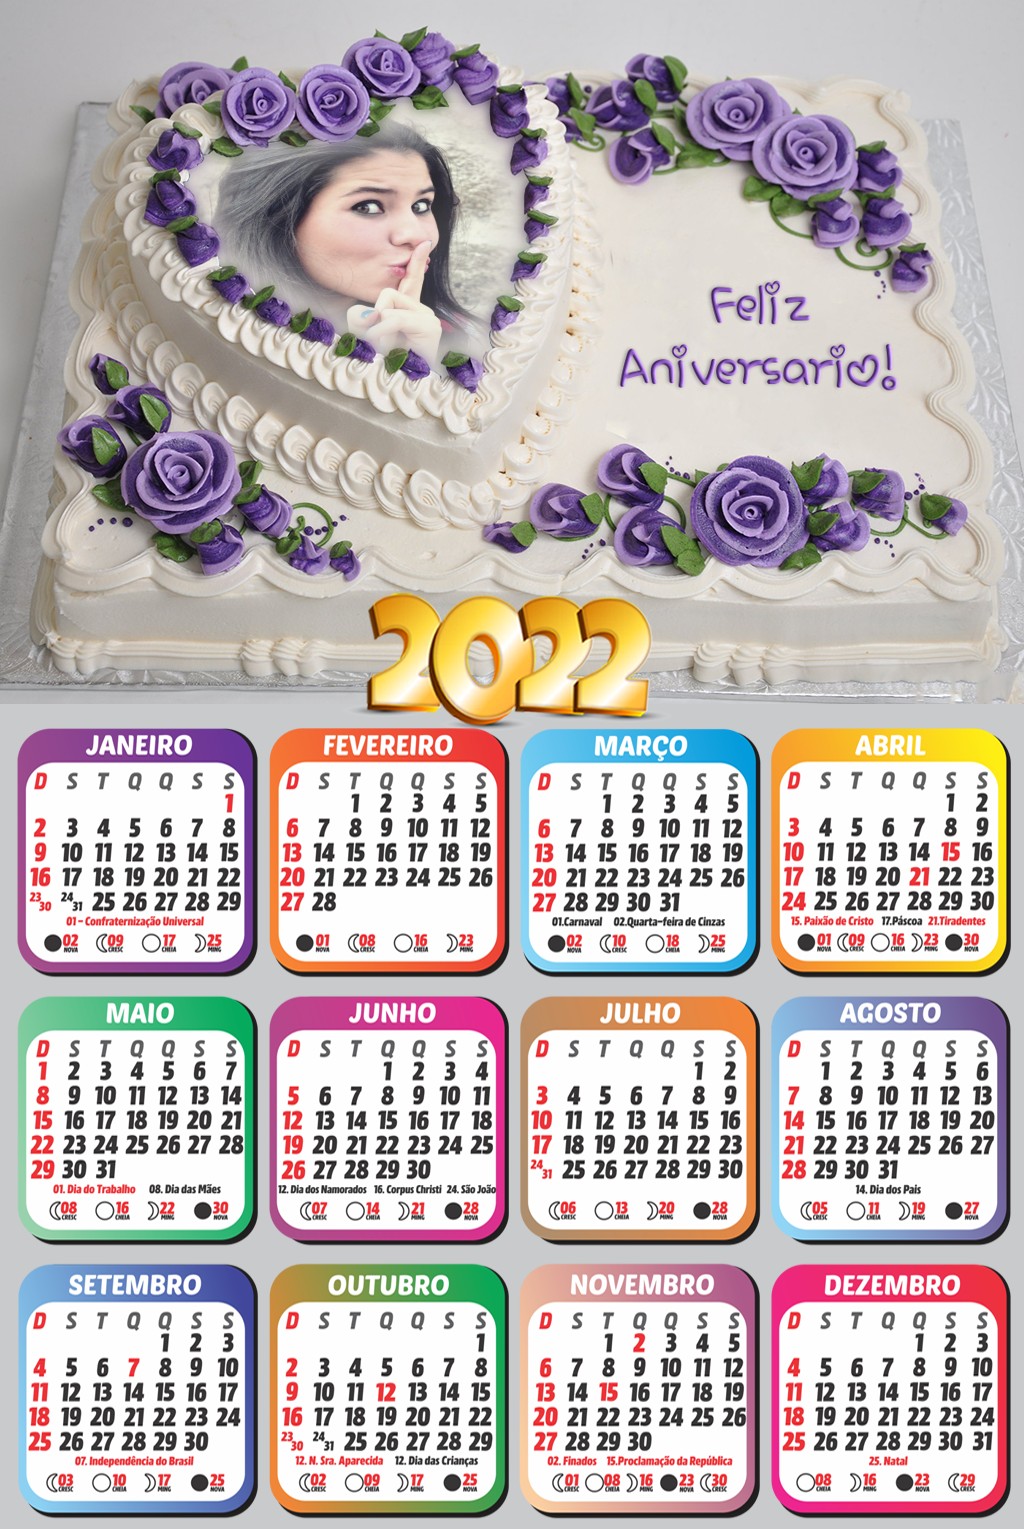 montar-calendario-2022-feliz-aniversario-em-bolo